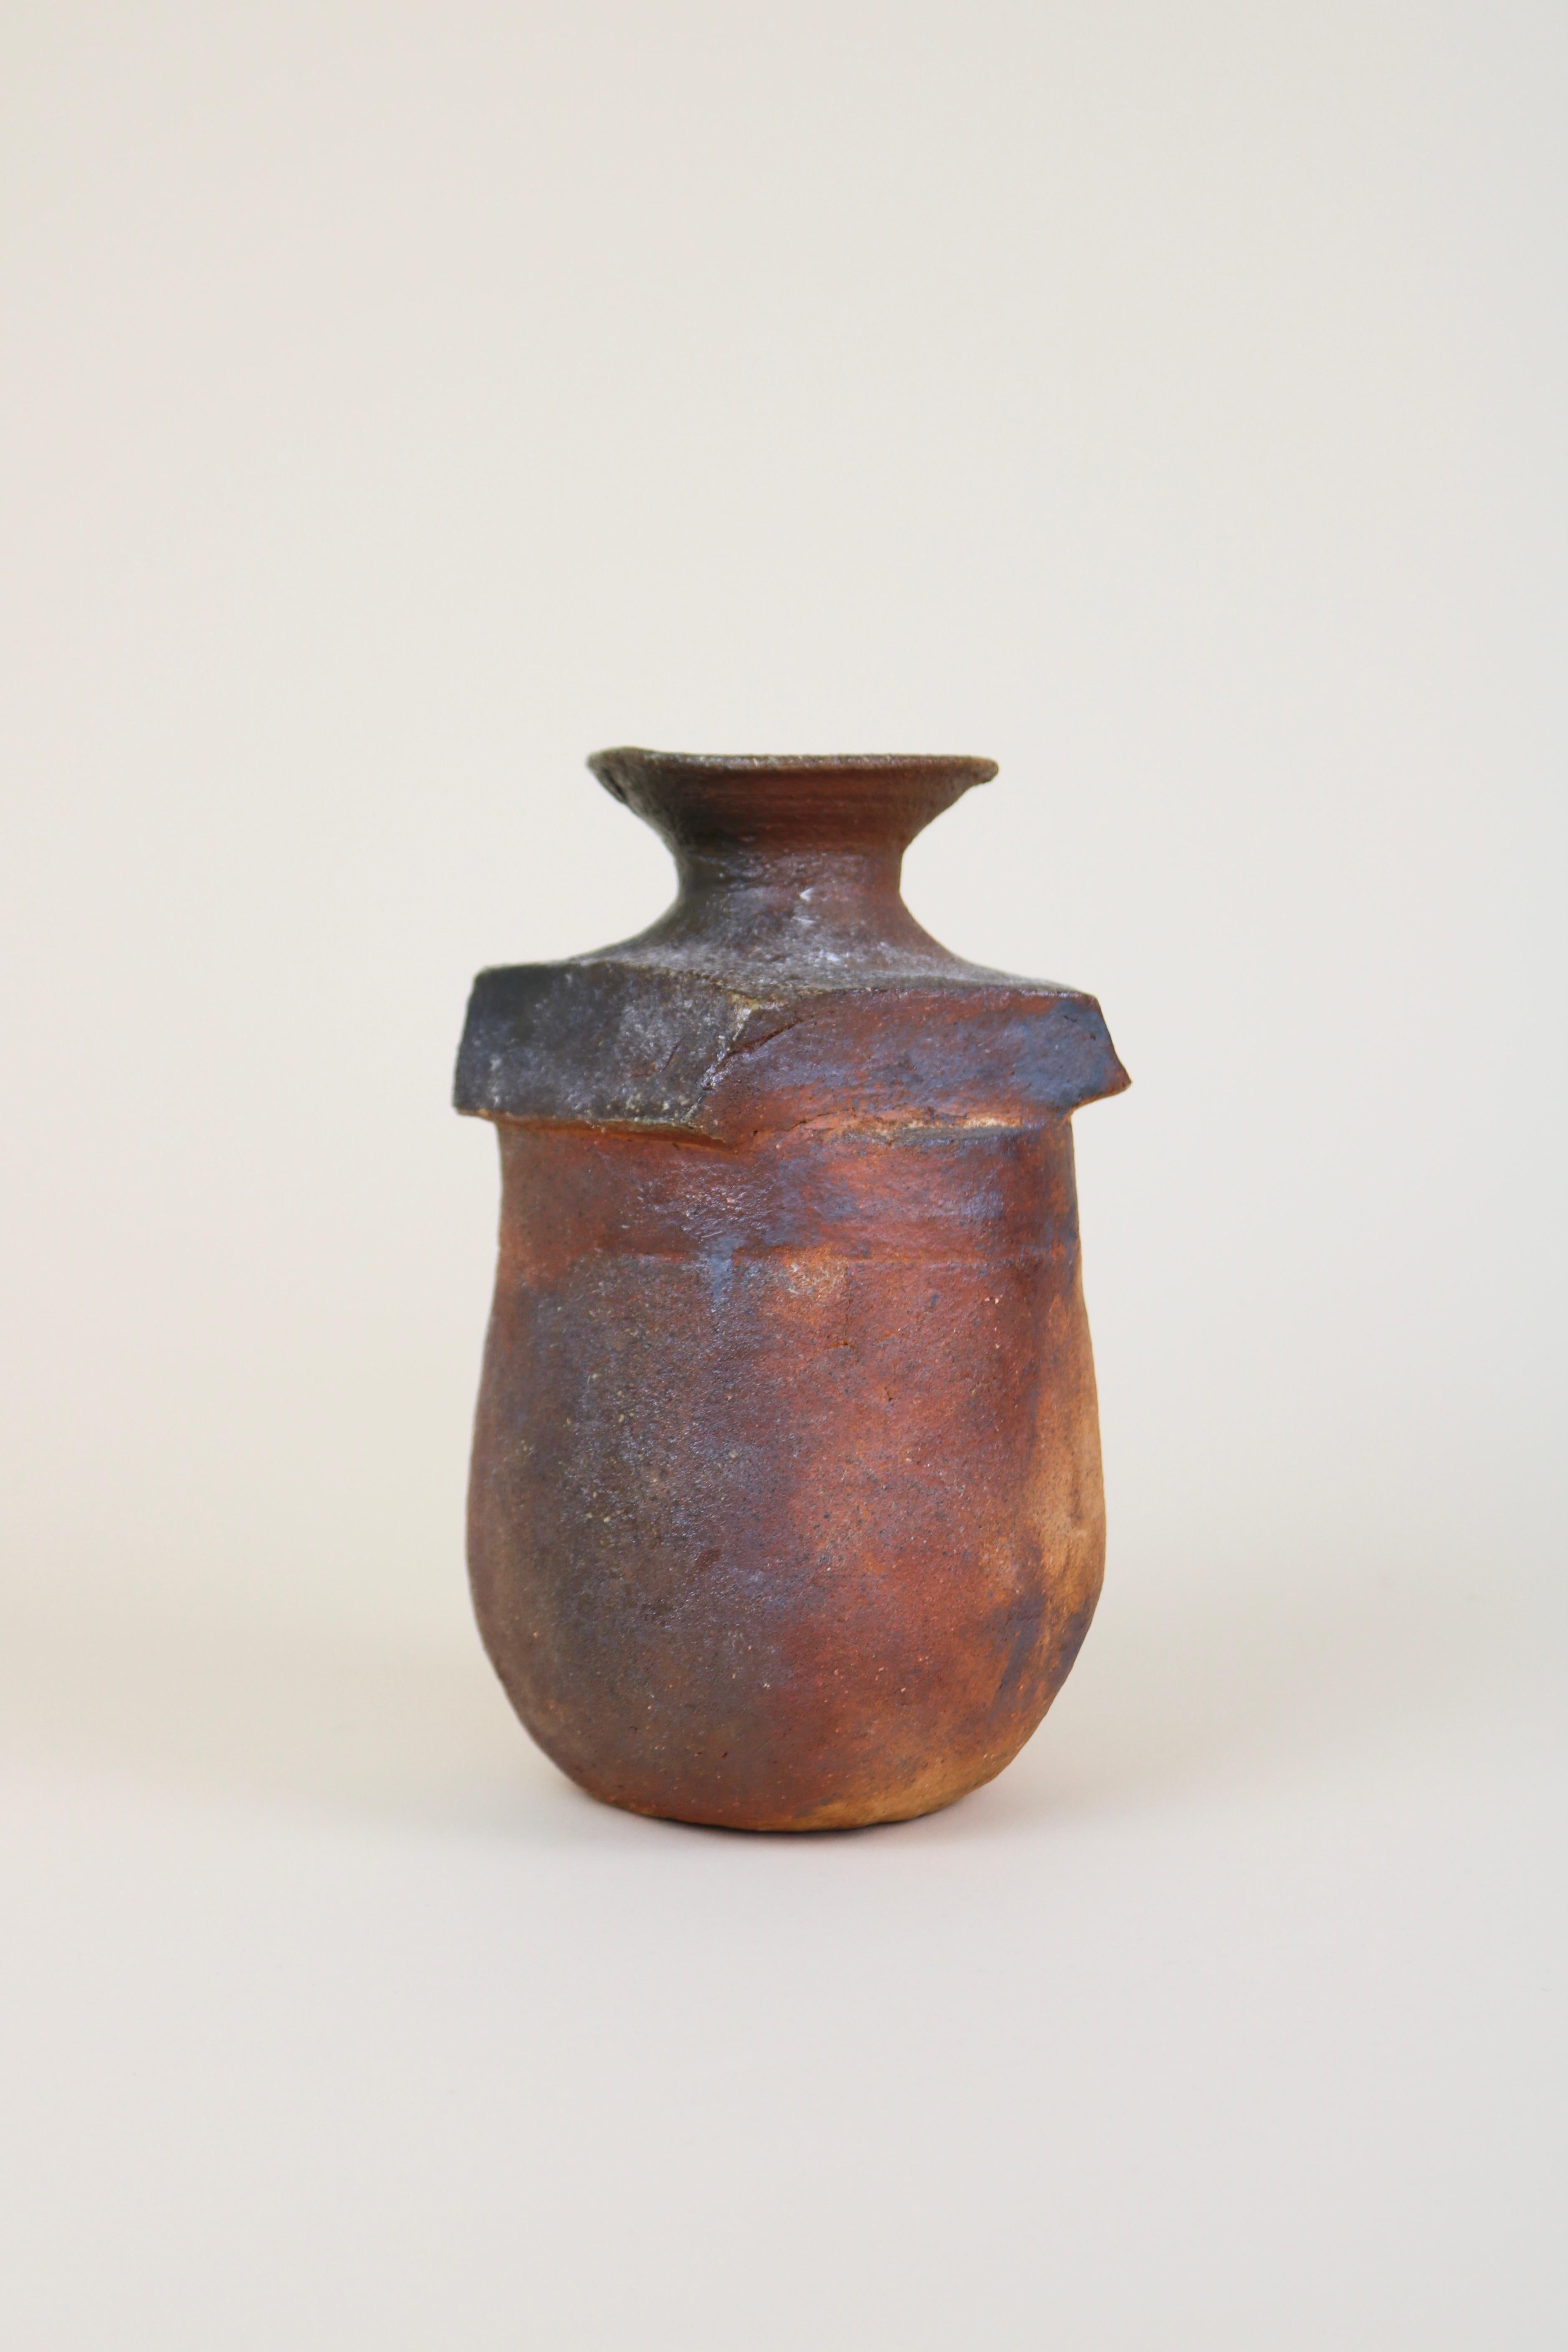 Vase sculptural en céramique de Gérard Brossard, potier de La Borne, c1980
Un vase en grès lourd et épais, à la forme asymétrique et à l'aspect brut fait à la main.

Brossard a été l'élève de Jean et Jacqueline Lerat dans les années 1970.
En parfait